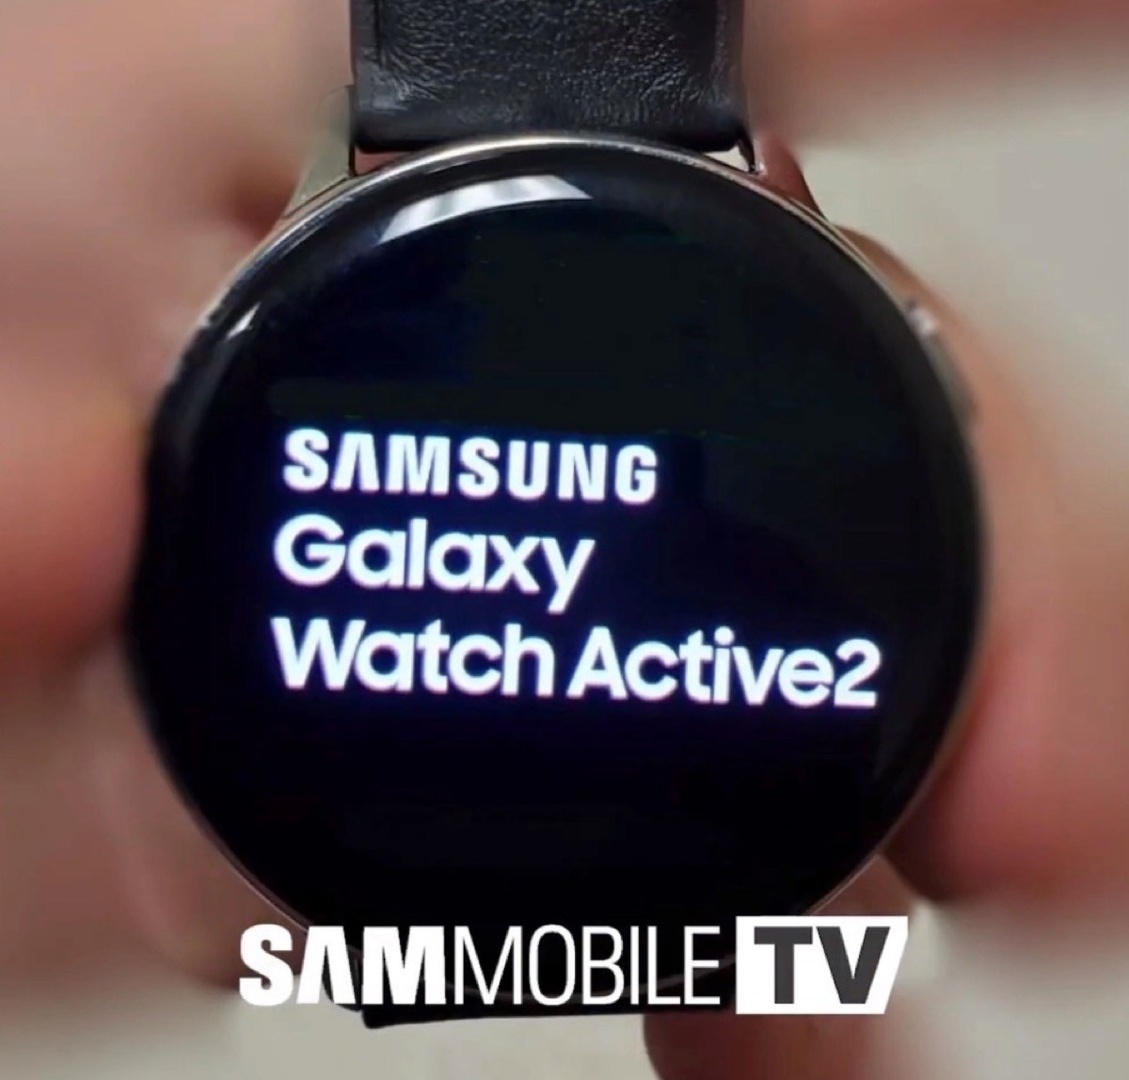 Das vermeintliche Design der Galaxy Watch Active 2